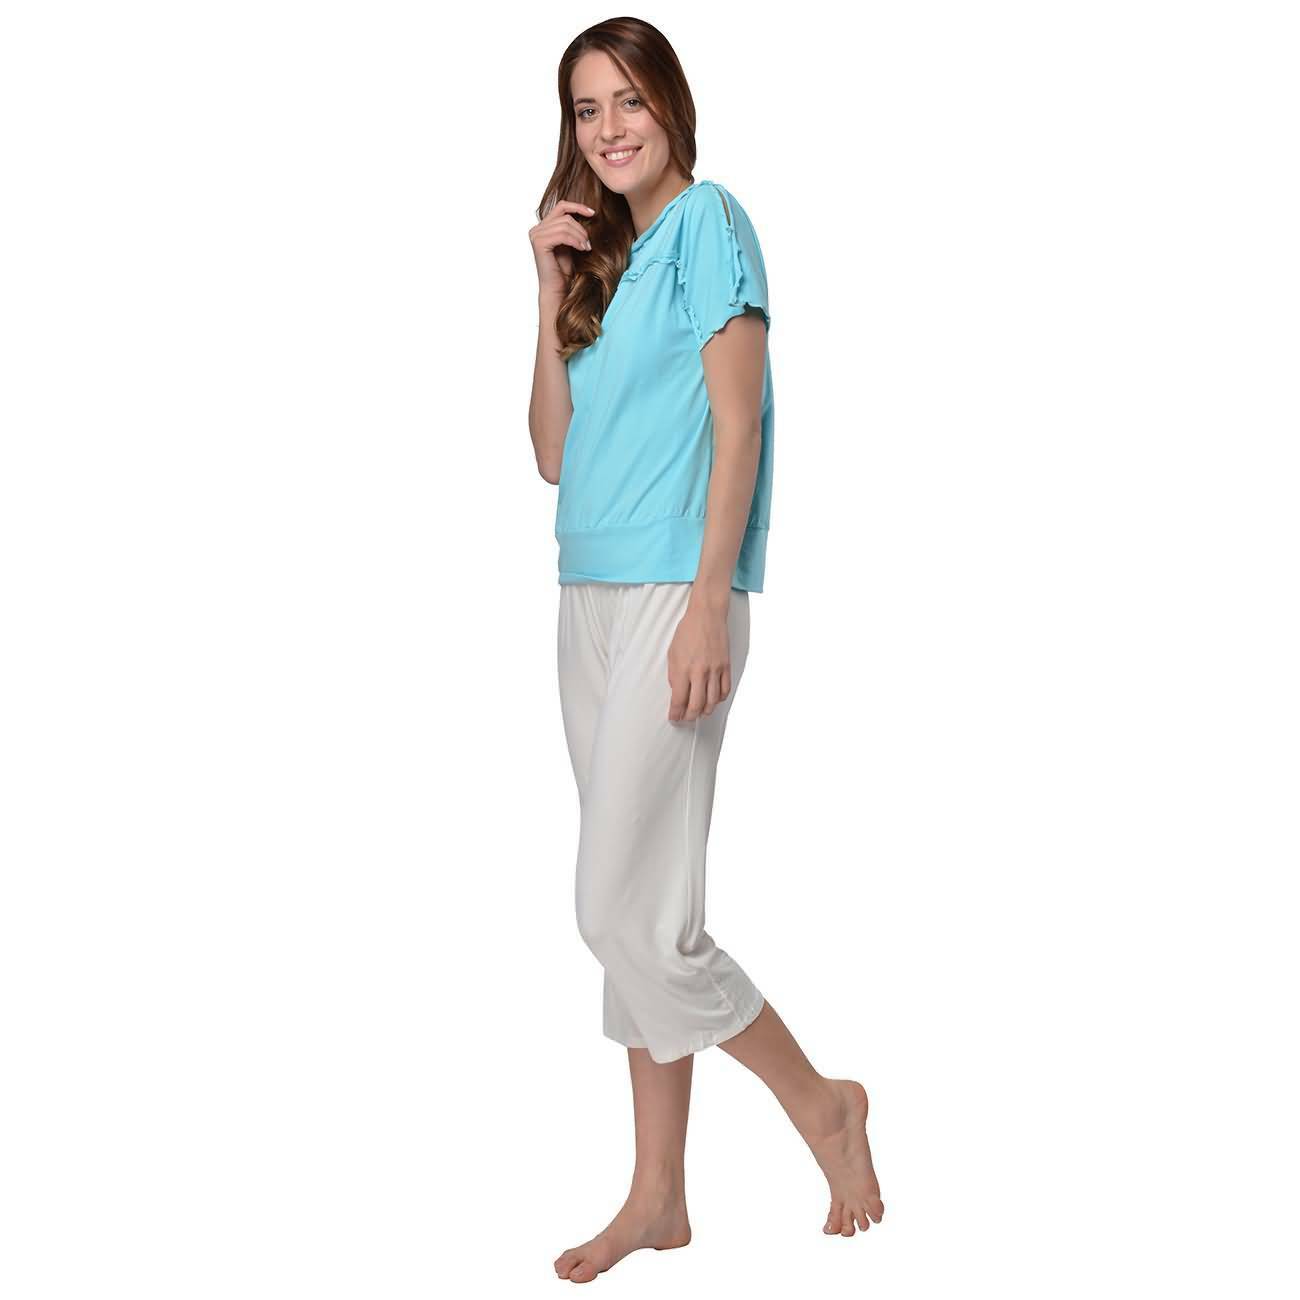 RAIKOU Damen Viskose Shirt + 3/4 Hose Schlafanzug Sommer Pyjama Set Nachtwäsche mit Volants und elastischem Bund (48/50, Weiß)